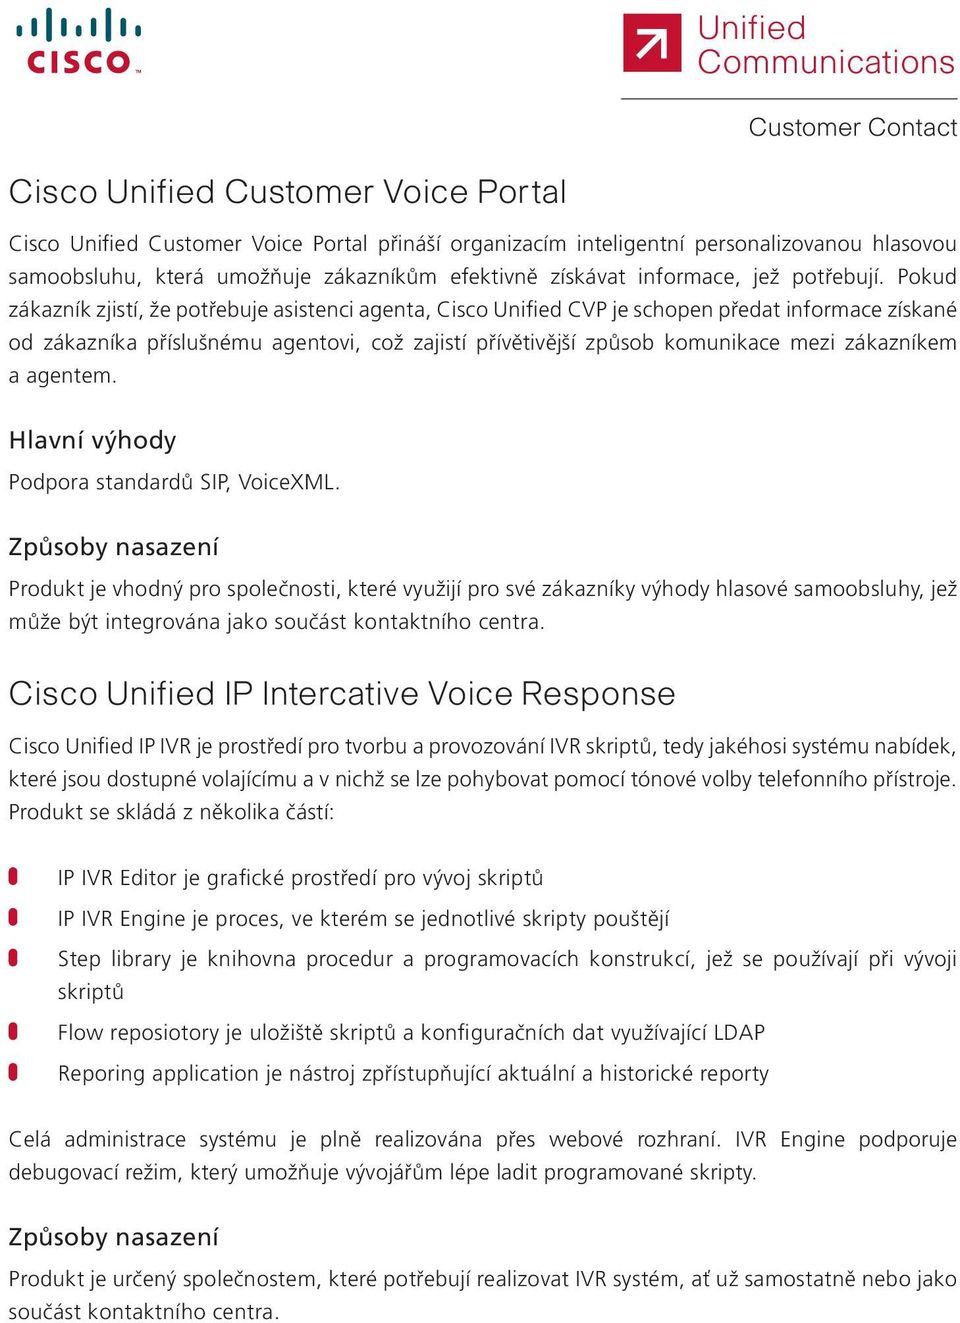 Pokud zákazník zjistí, že potřebuje asistenci agenta, Cisco Unified CVP je schopen předat informace získané od zákazníka příslušnému agentovi, což zajistí přívětivější způsob komunikace mezi